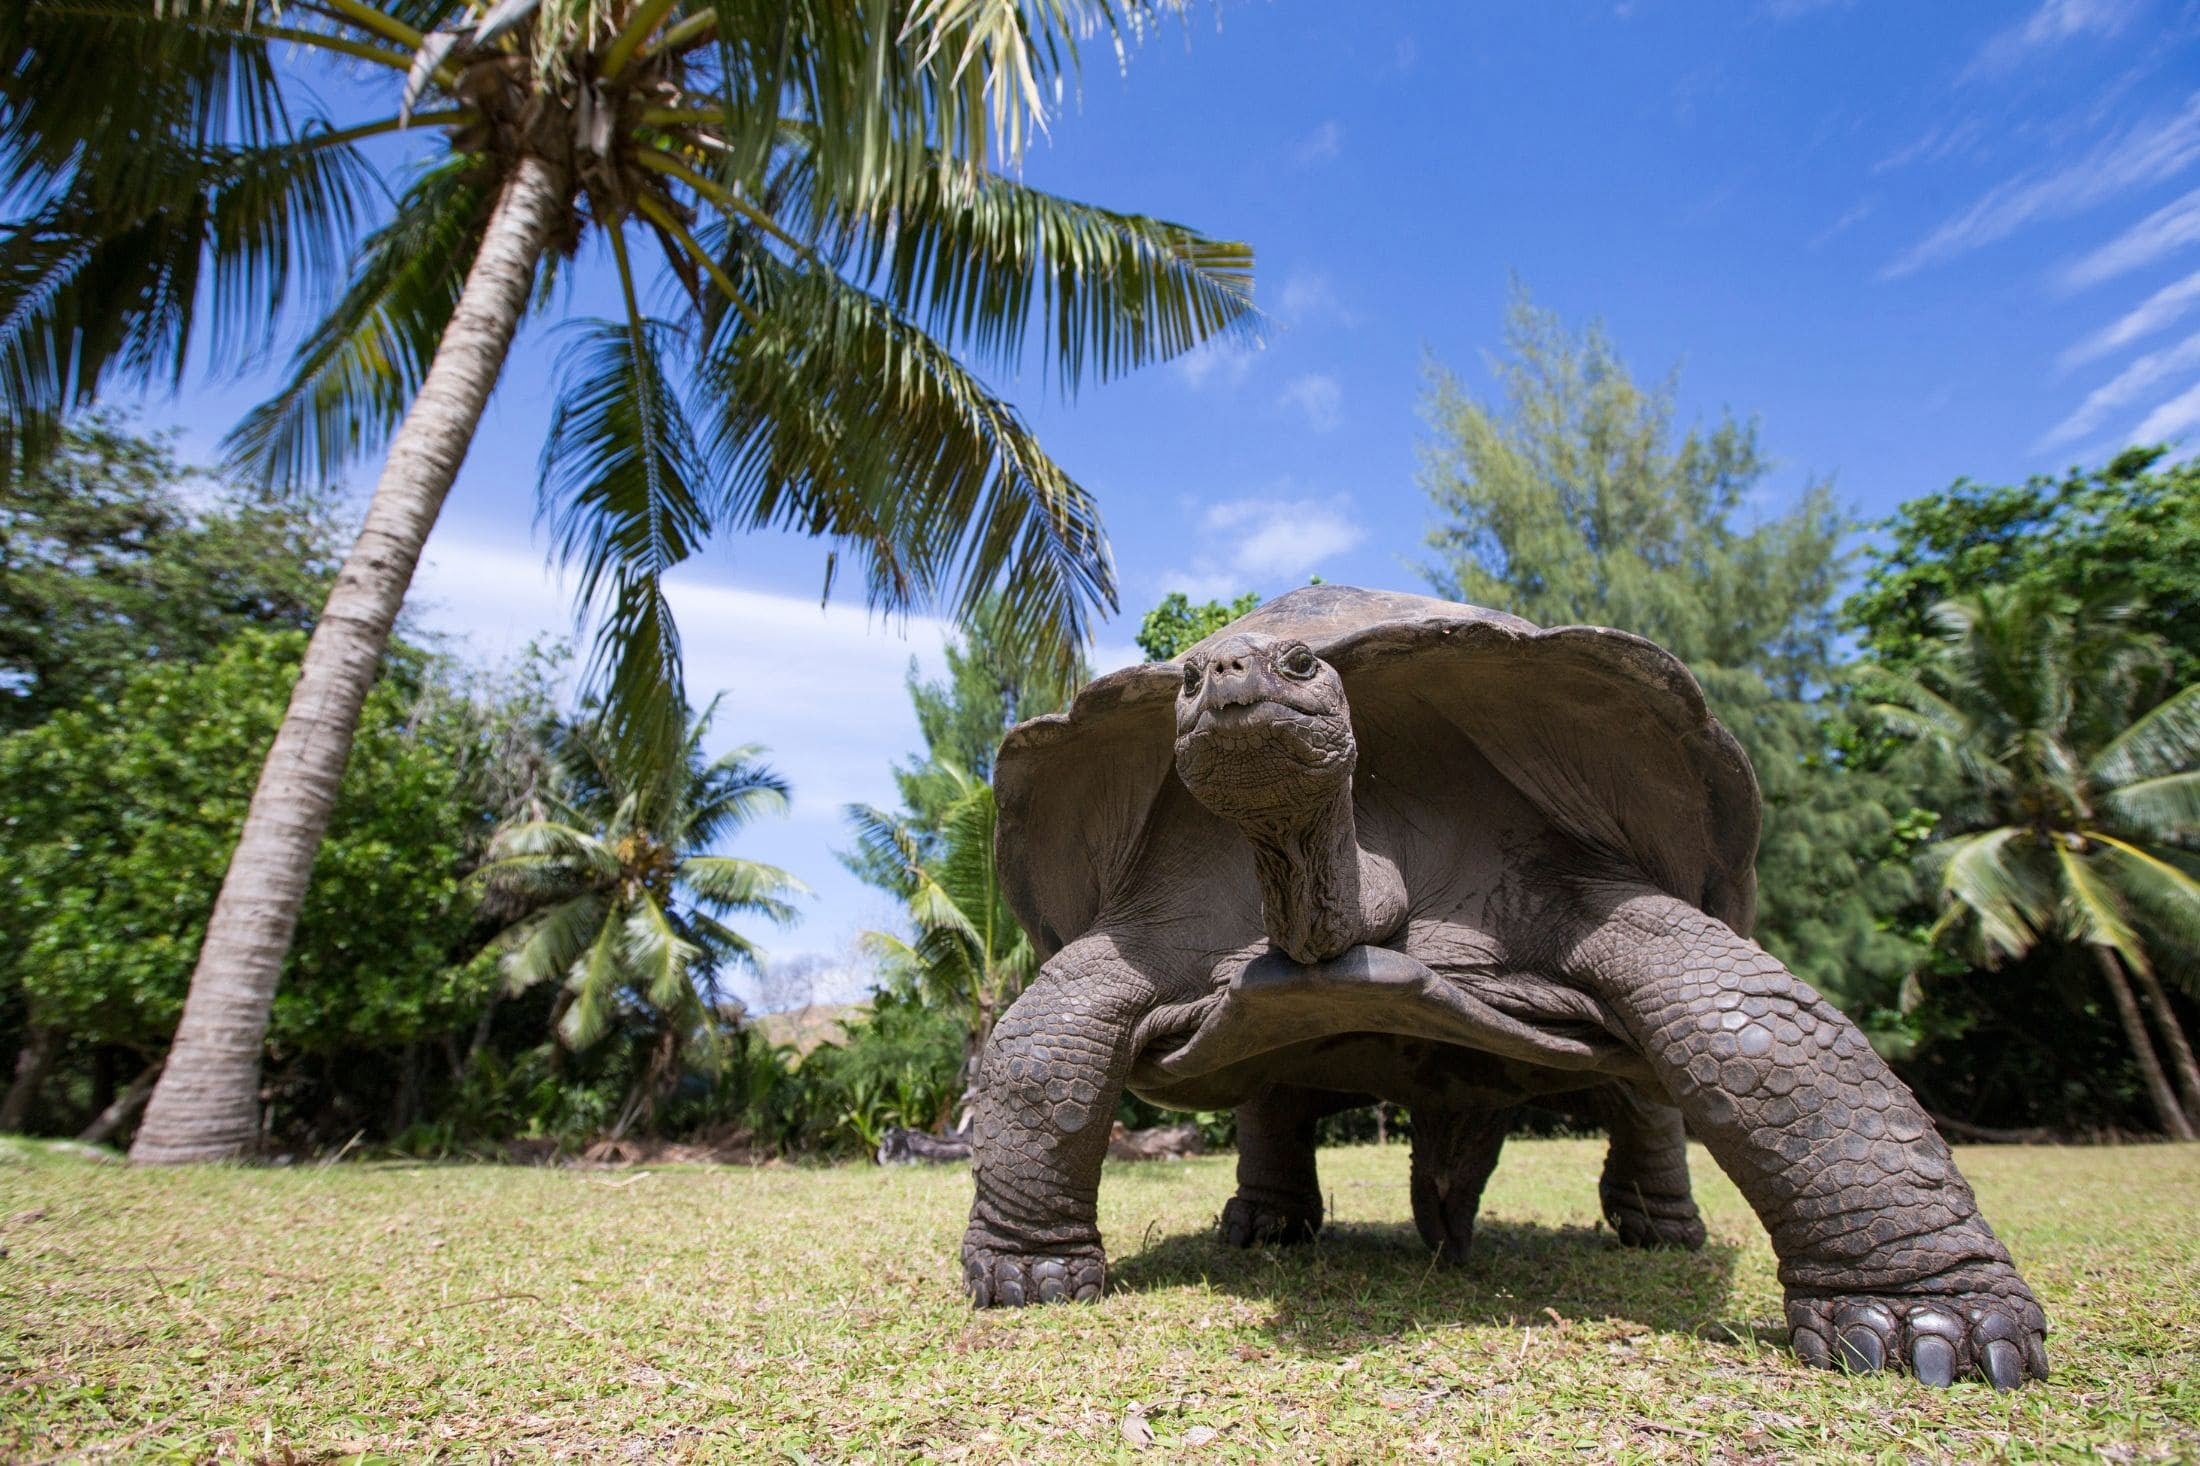 Aldabra Tortoise, prehistoric resident of Aldabra Atoll.